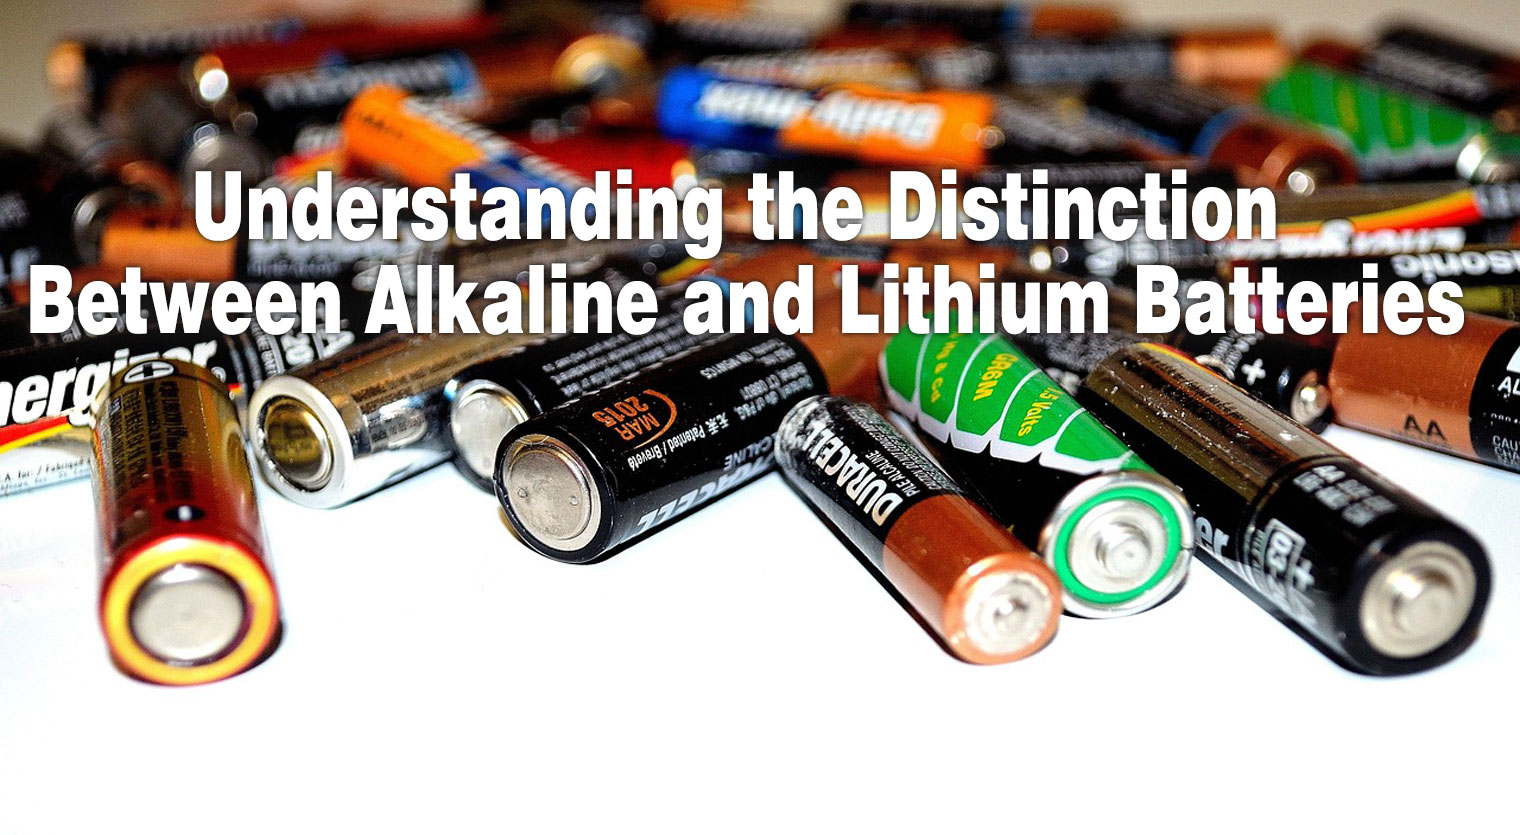 Розуміння різниці між лужними та літієвими батареями